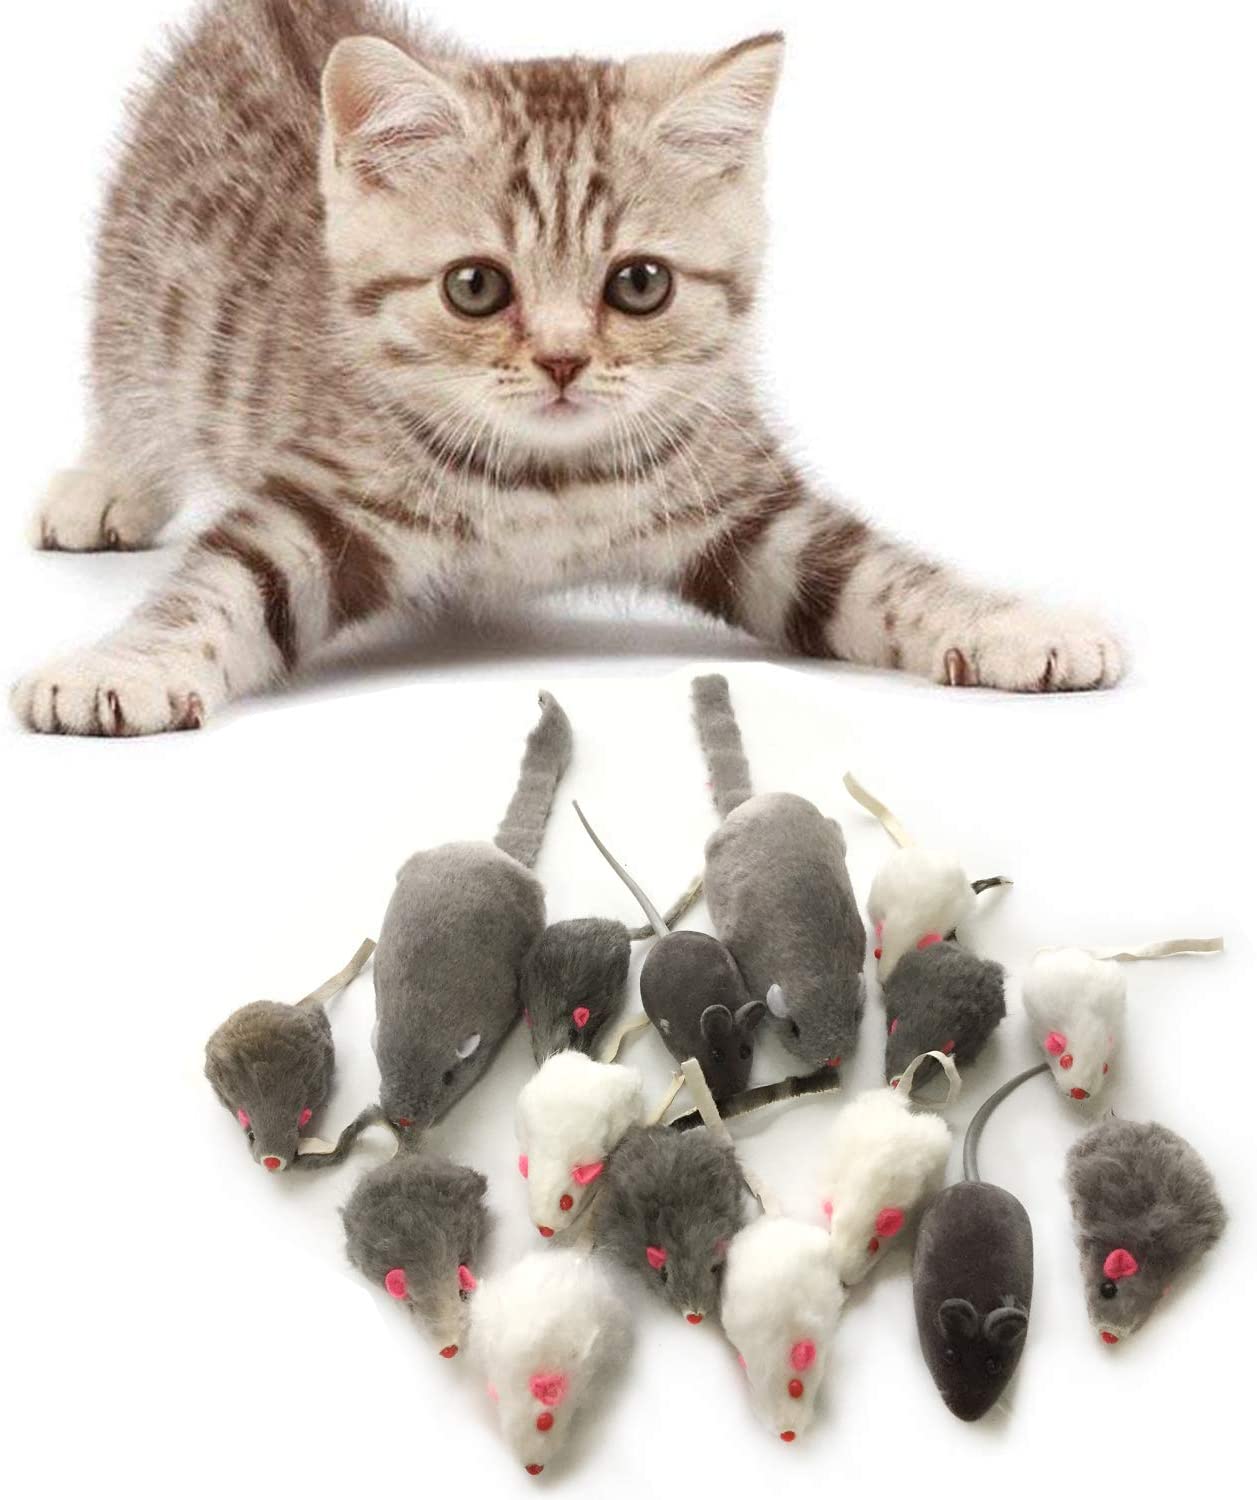  PietyPet Juguetes para Gatos, 16 Piezas Peludo Ratones sonajero pequeño Ratón Gato Gatito Interactivo, Colores Variados 